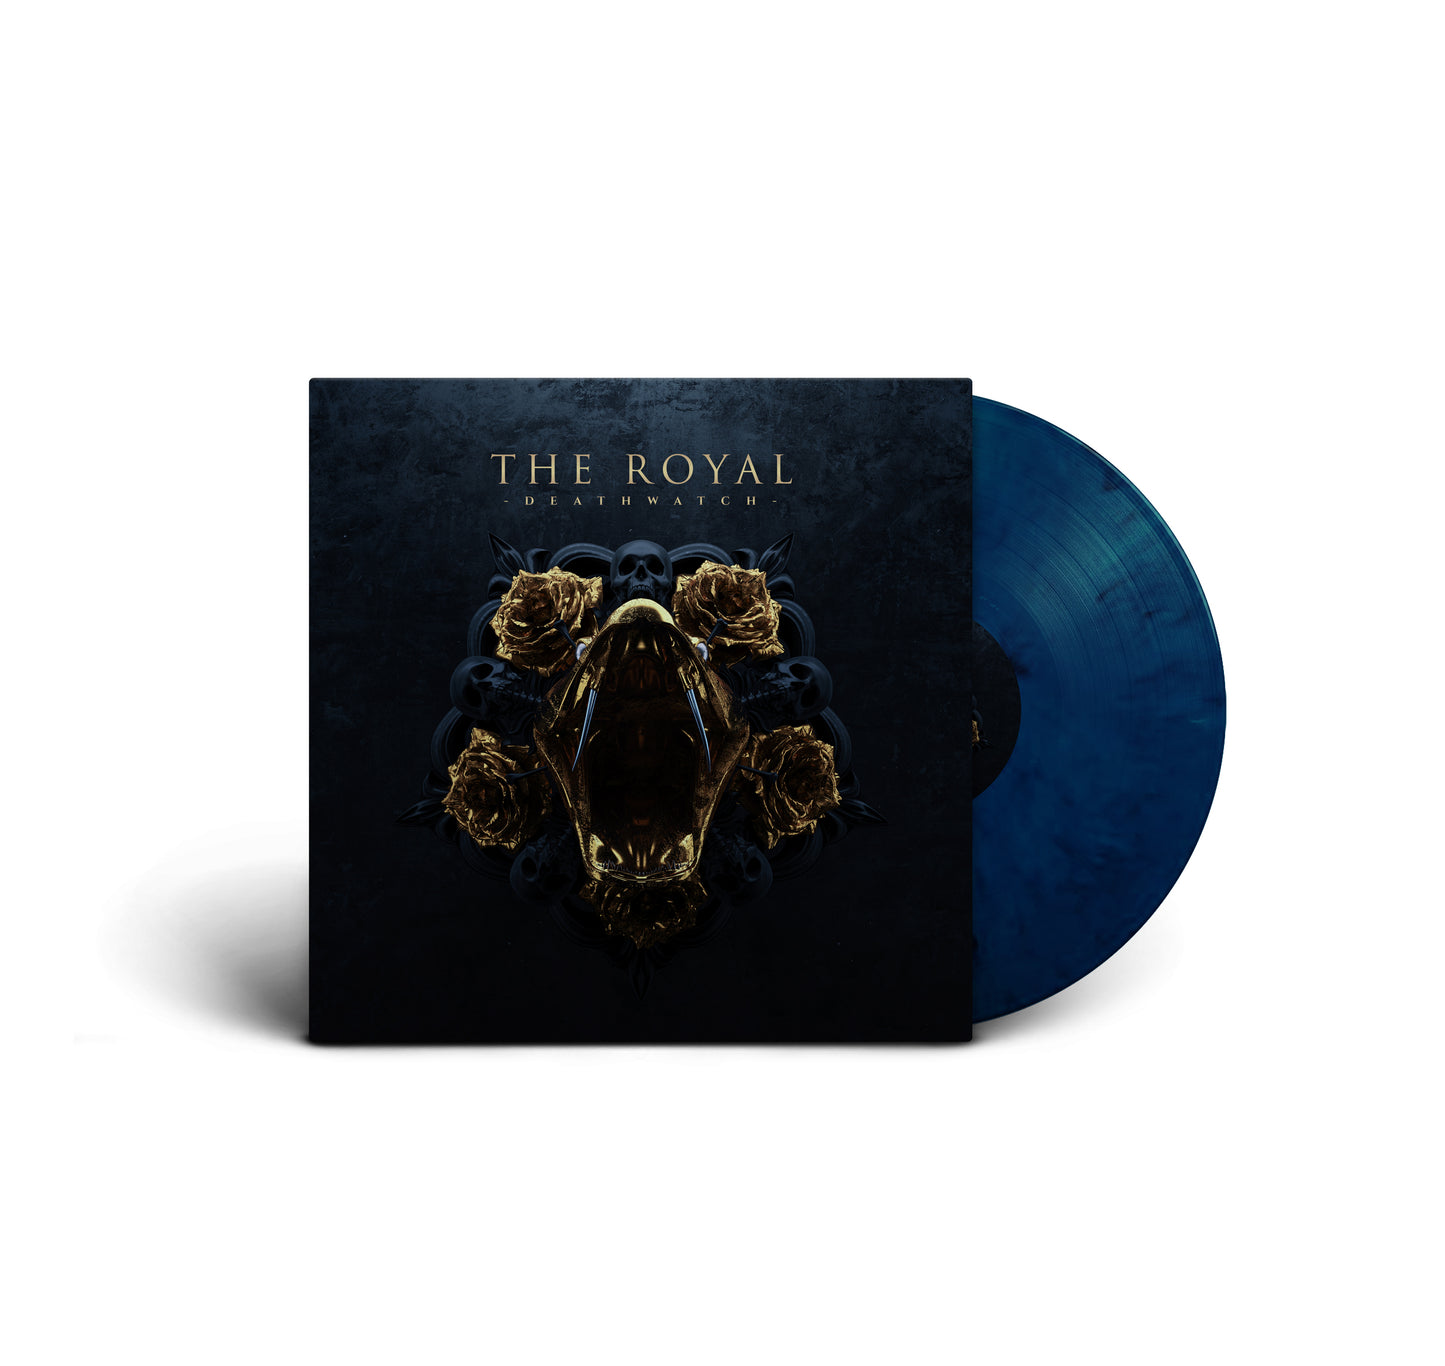 The Royal "Deathwatch" LP-Bundle "Roses"